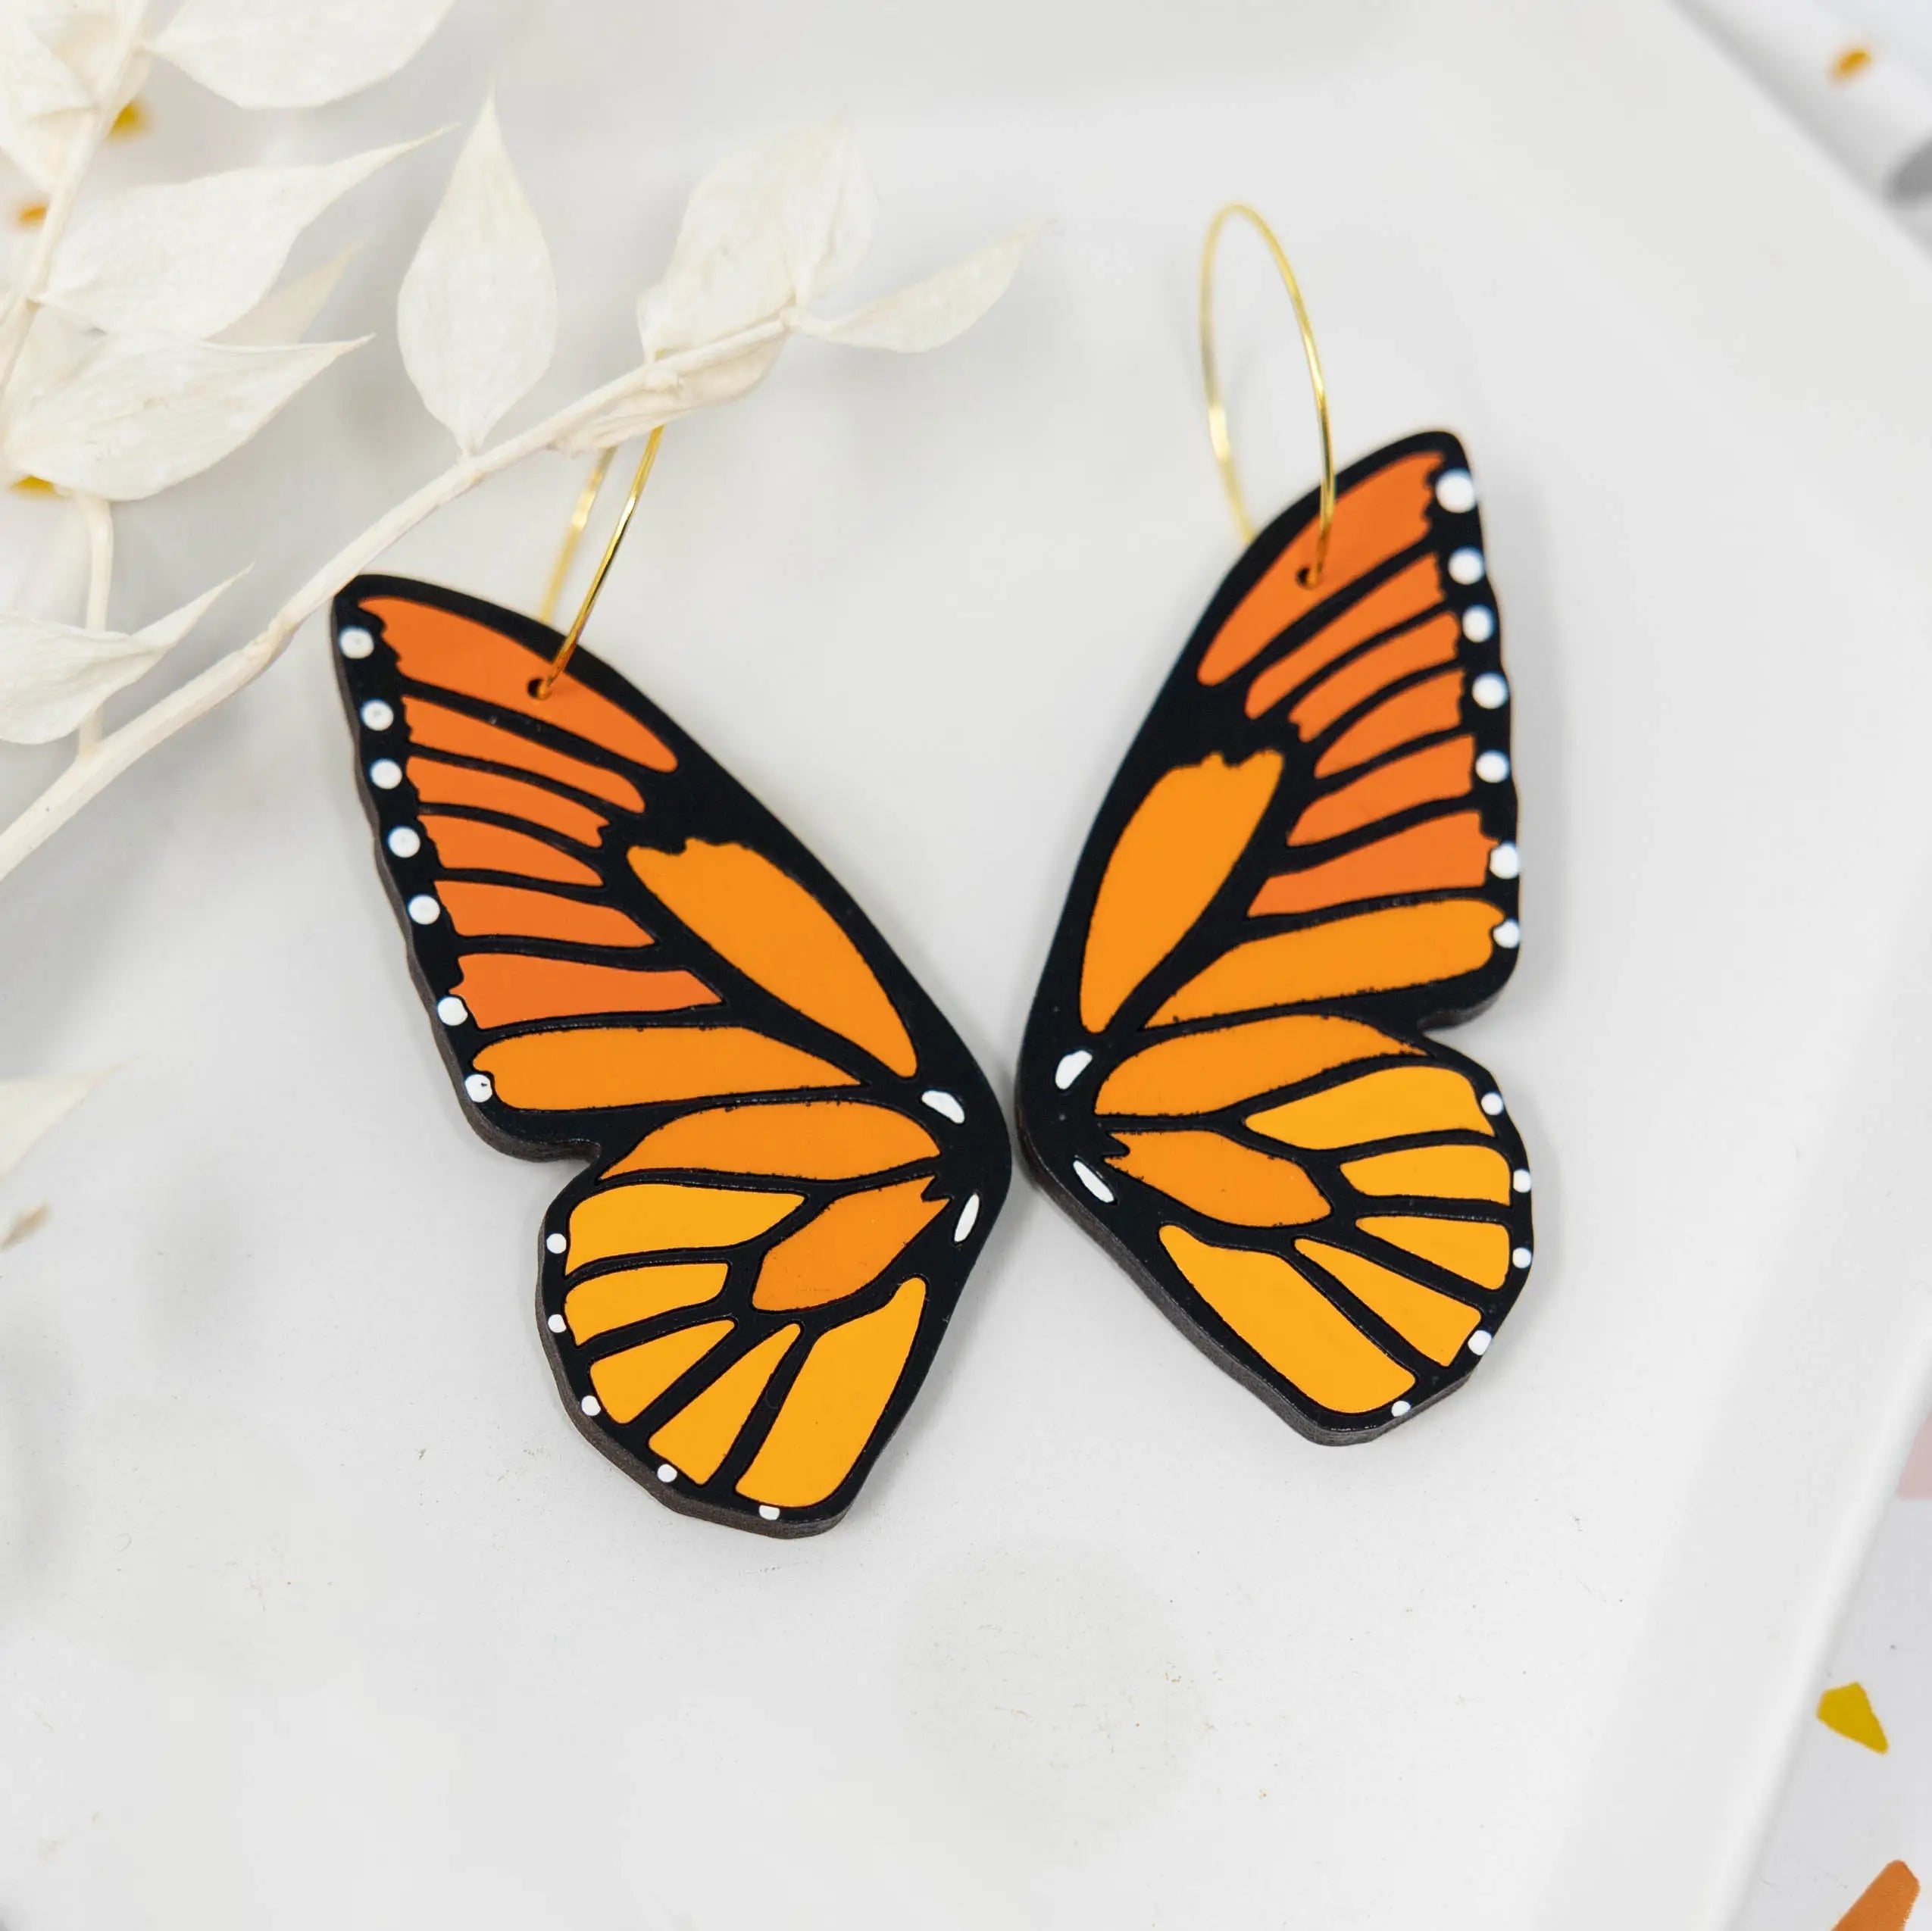 monarch butterfly wings